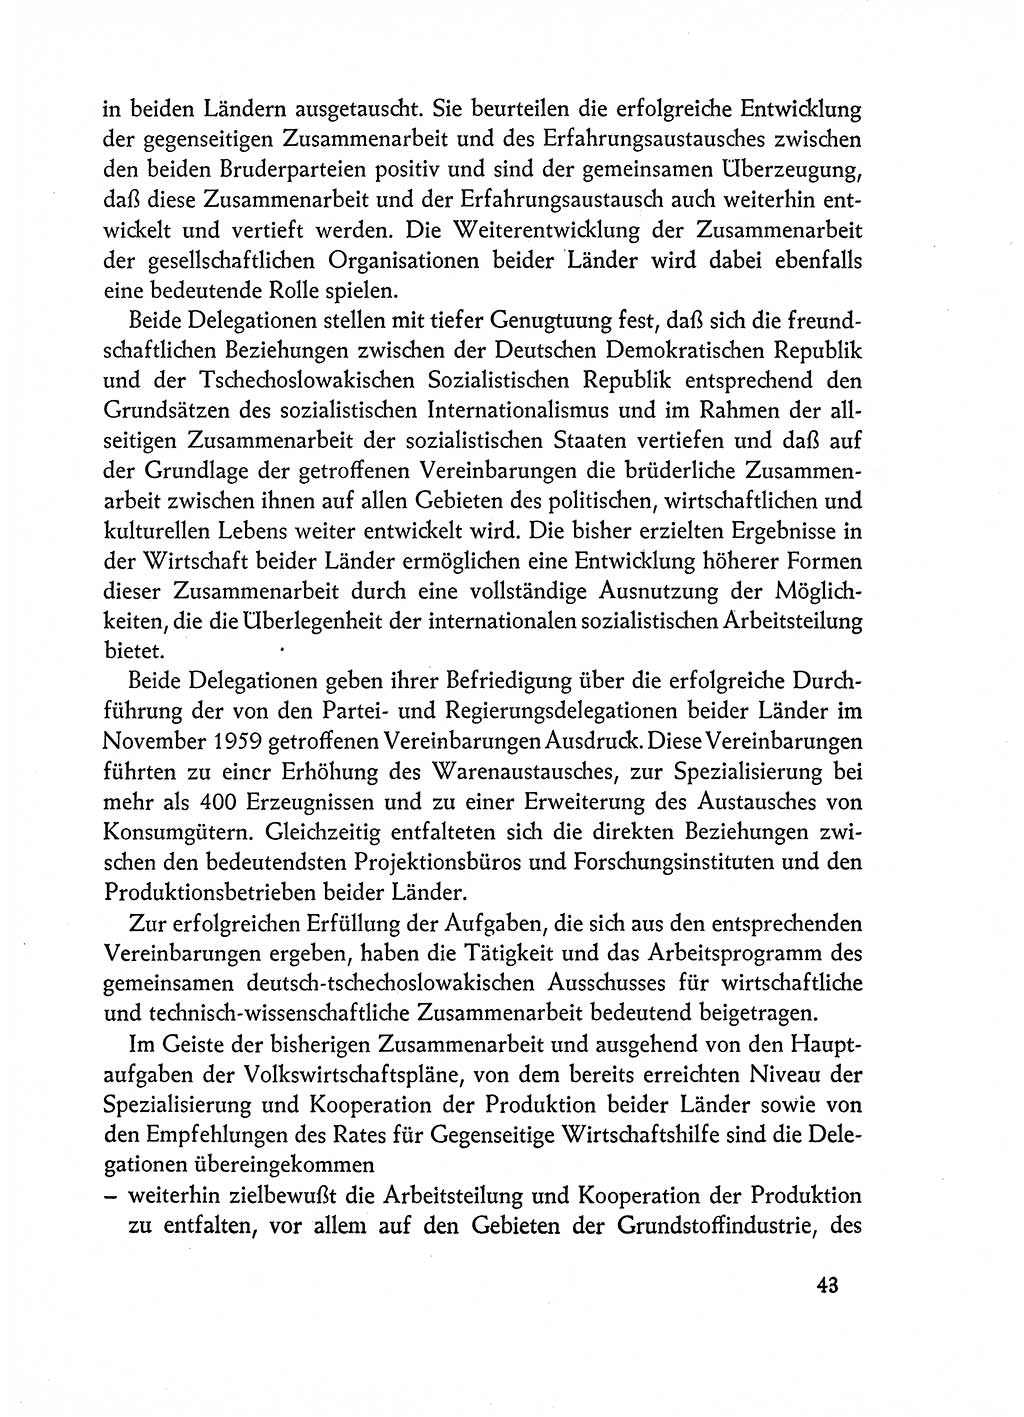 Dokumente der Sozialistischen Einheitspartei Deutschlands (SED) [Deutsche Demokratische Republik (DDR)] 1962-1963, Seite 43 (Dok. SED DDR 1962-1963, S. 43)